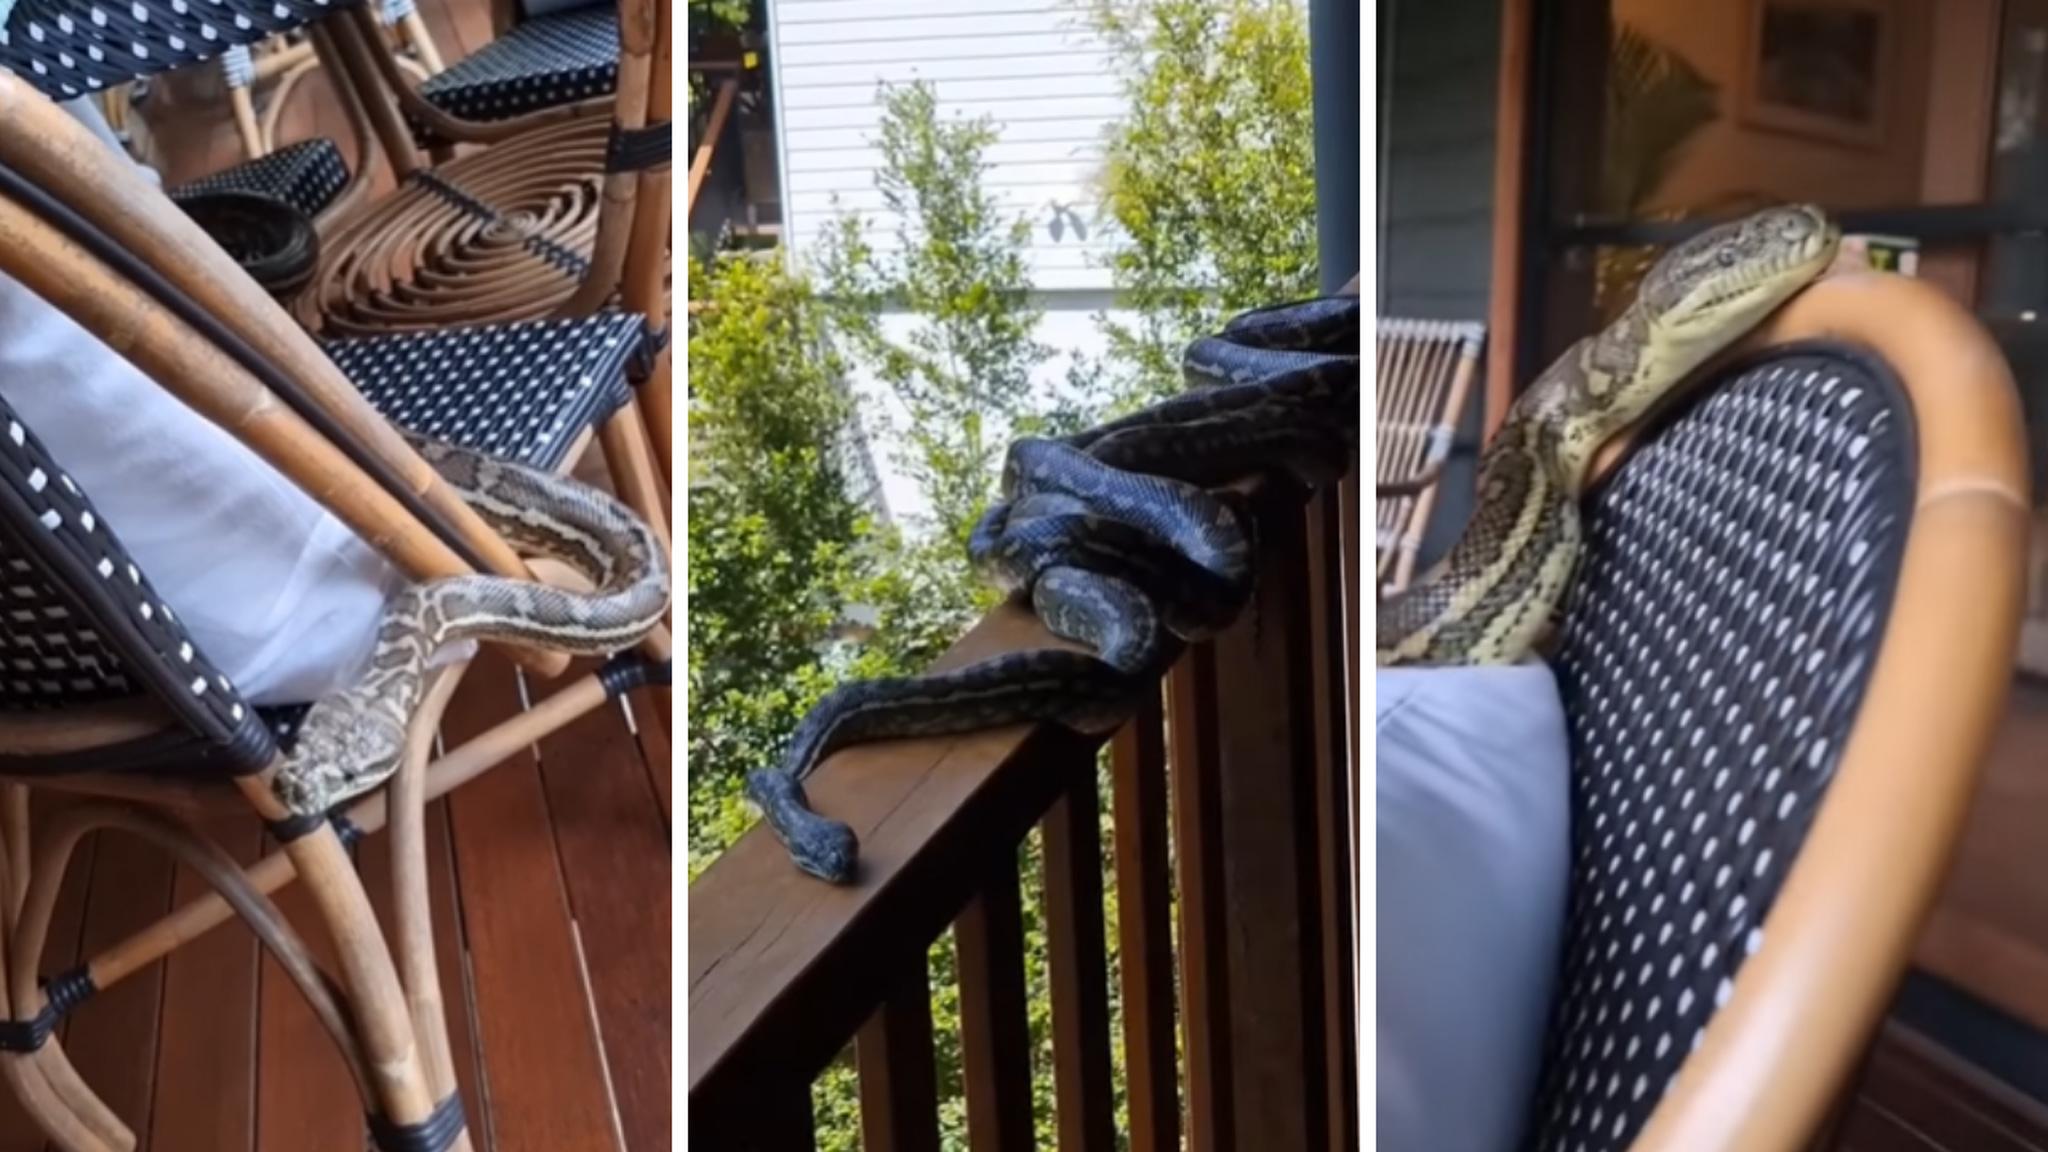 Cobras pítons gigantes estão invadindo Flórida, diz estudo